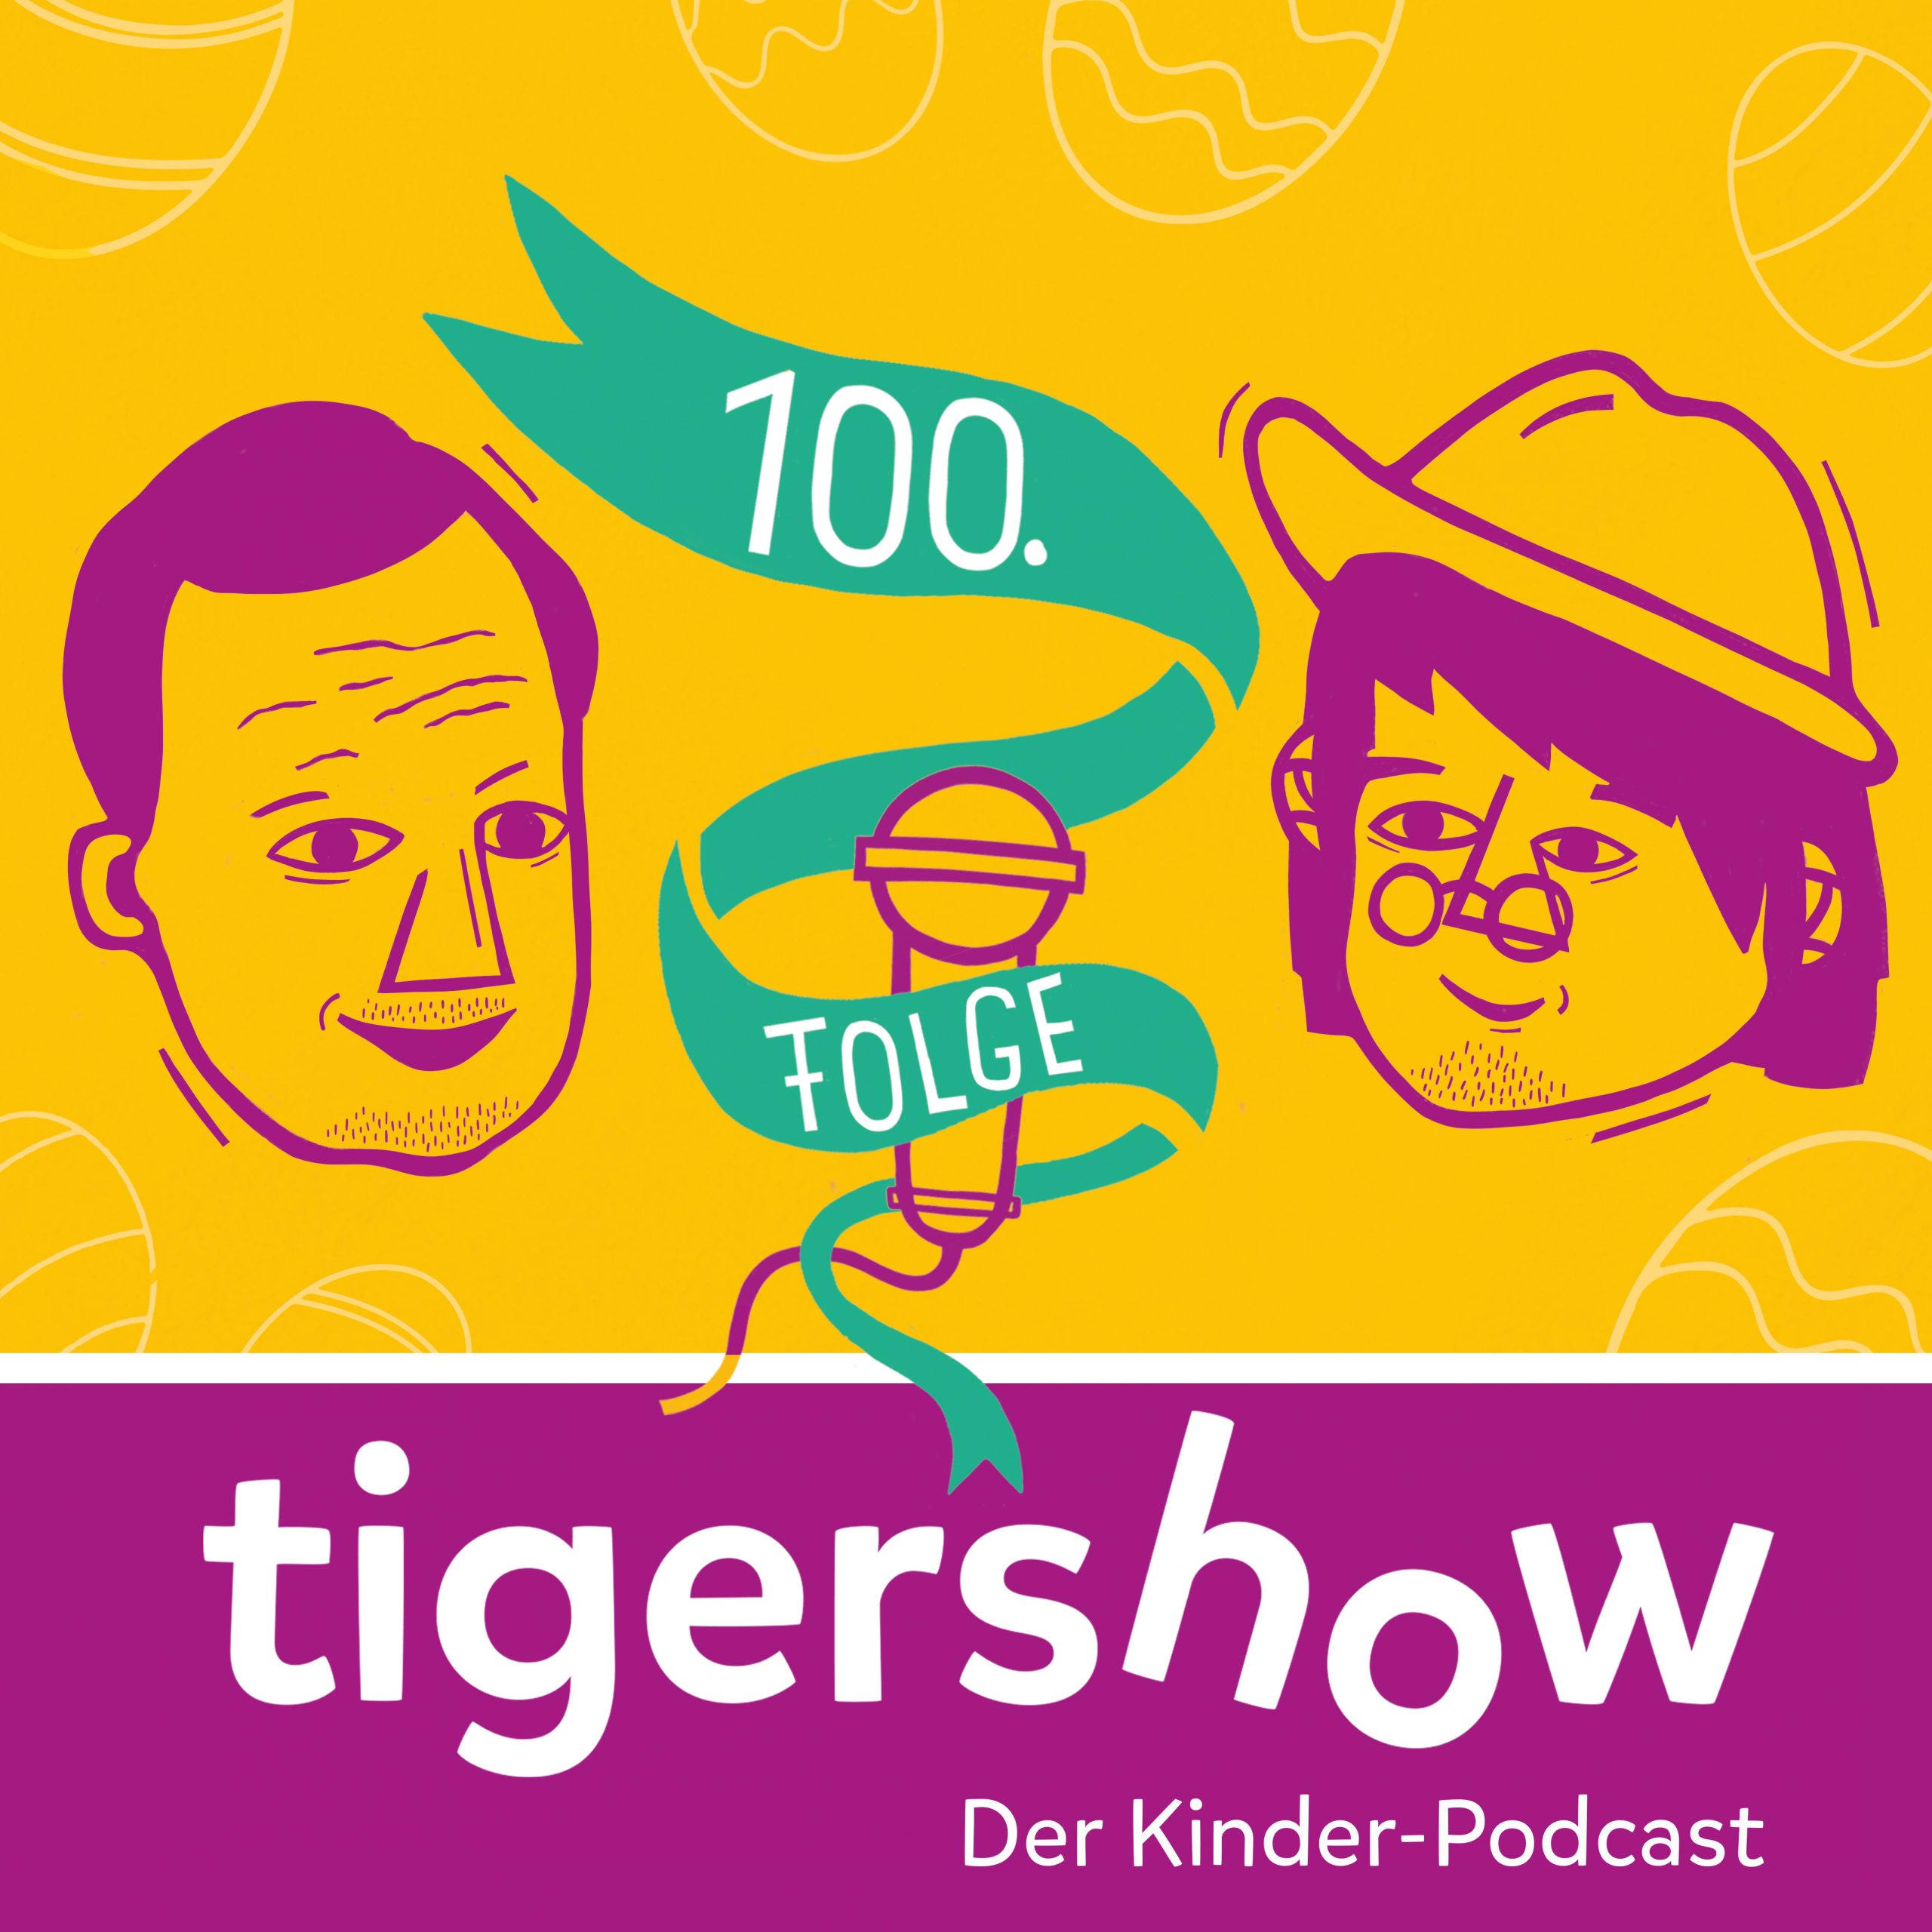 Die 100. tigershow: Der Erfolgspodcast für die ganze Familie feiert Jubiläum